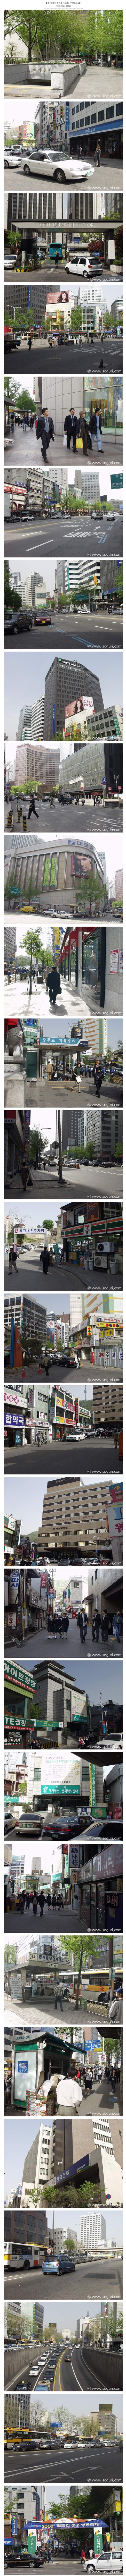 딱 20년 전의 서울 명동 풍경 - 꾸르